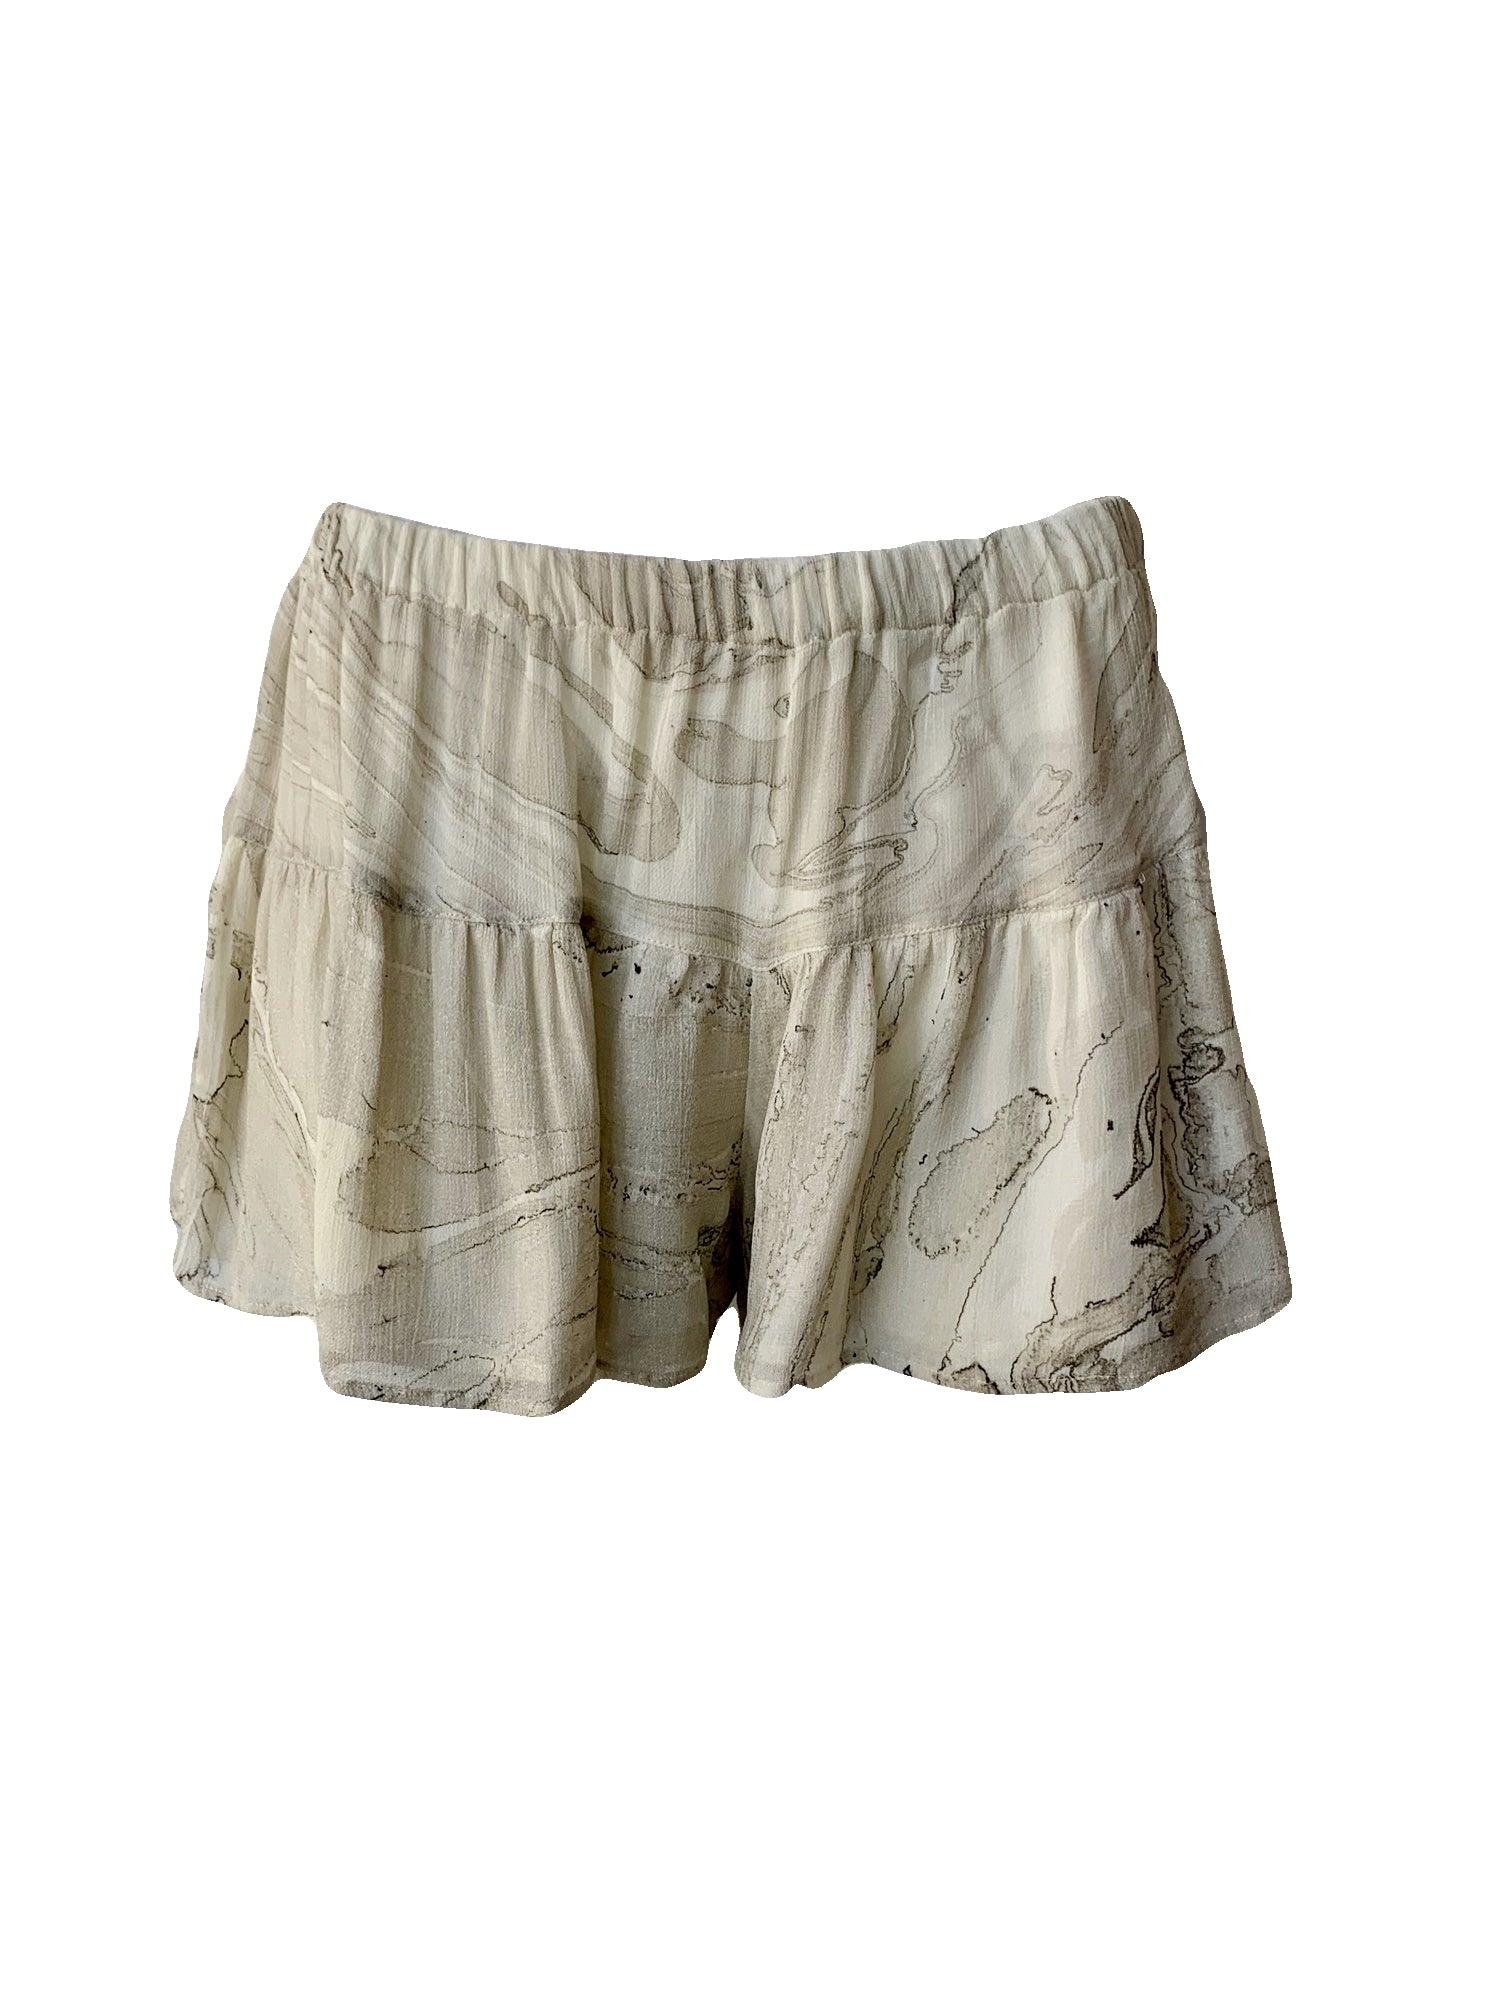 Ivory Printed Shorts Size 4